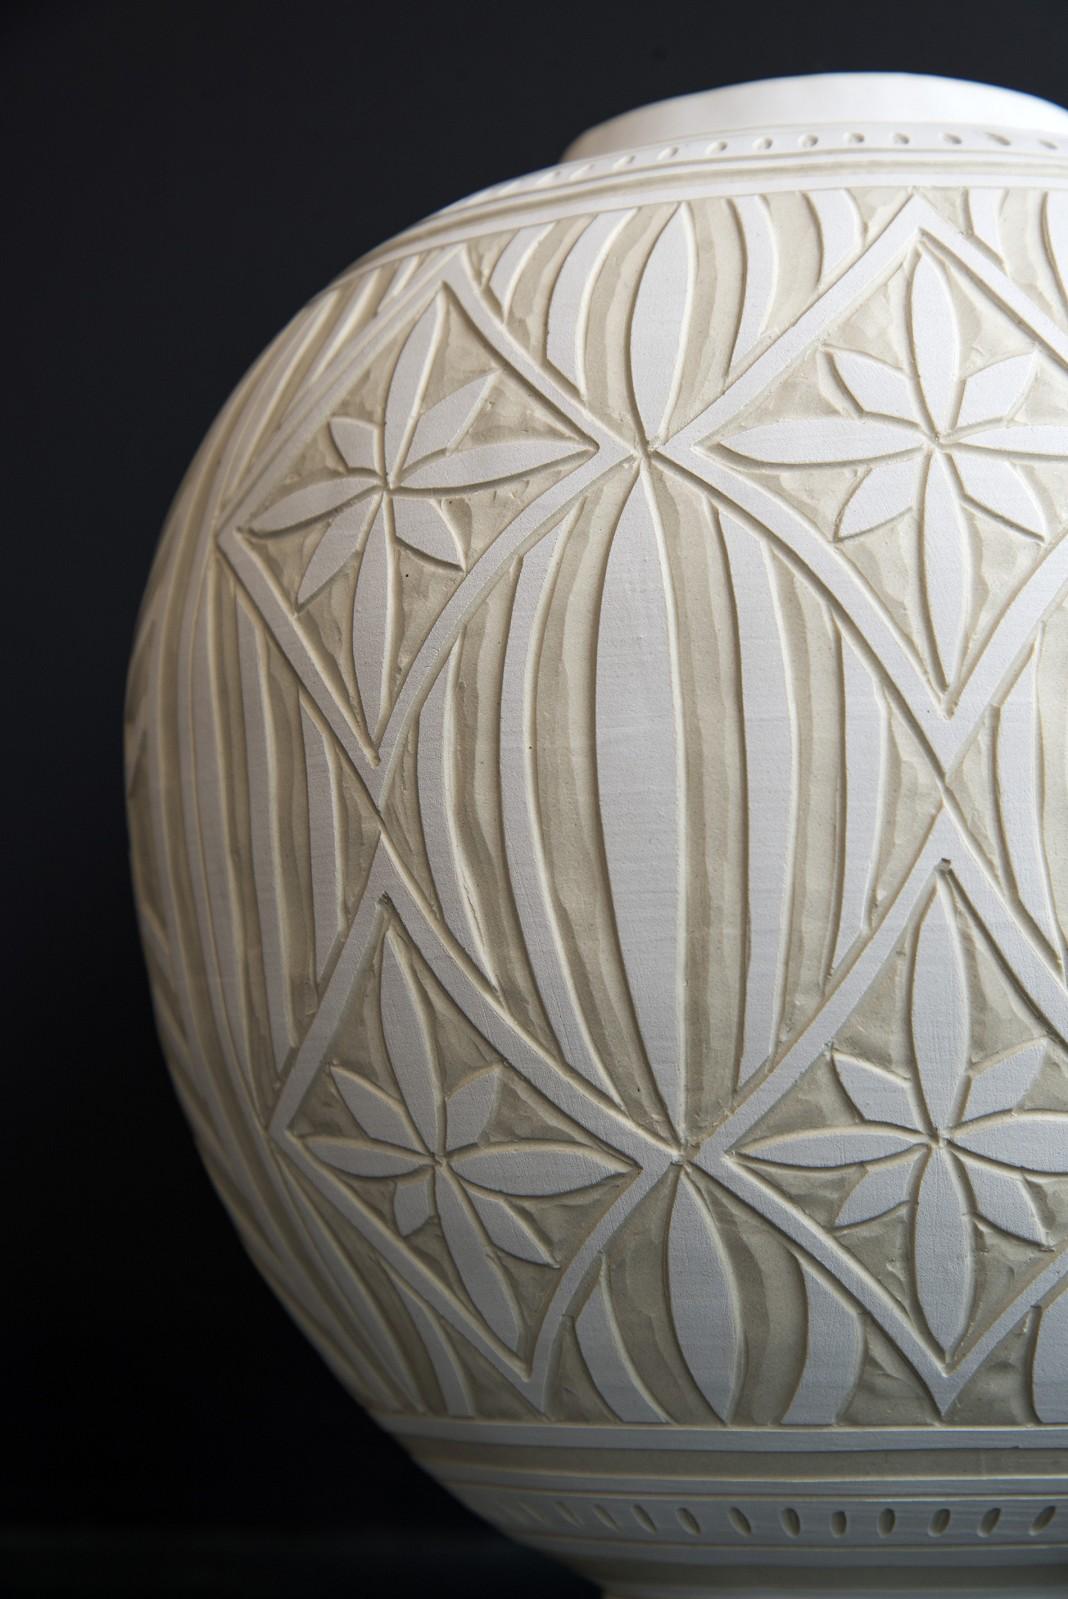 Medium Engraved Ginger Jar - decorative, detailed, handcrafted, porcelain vessel 1